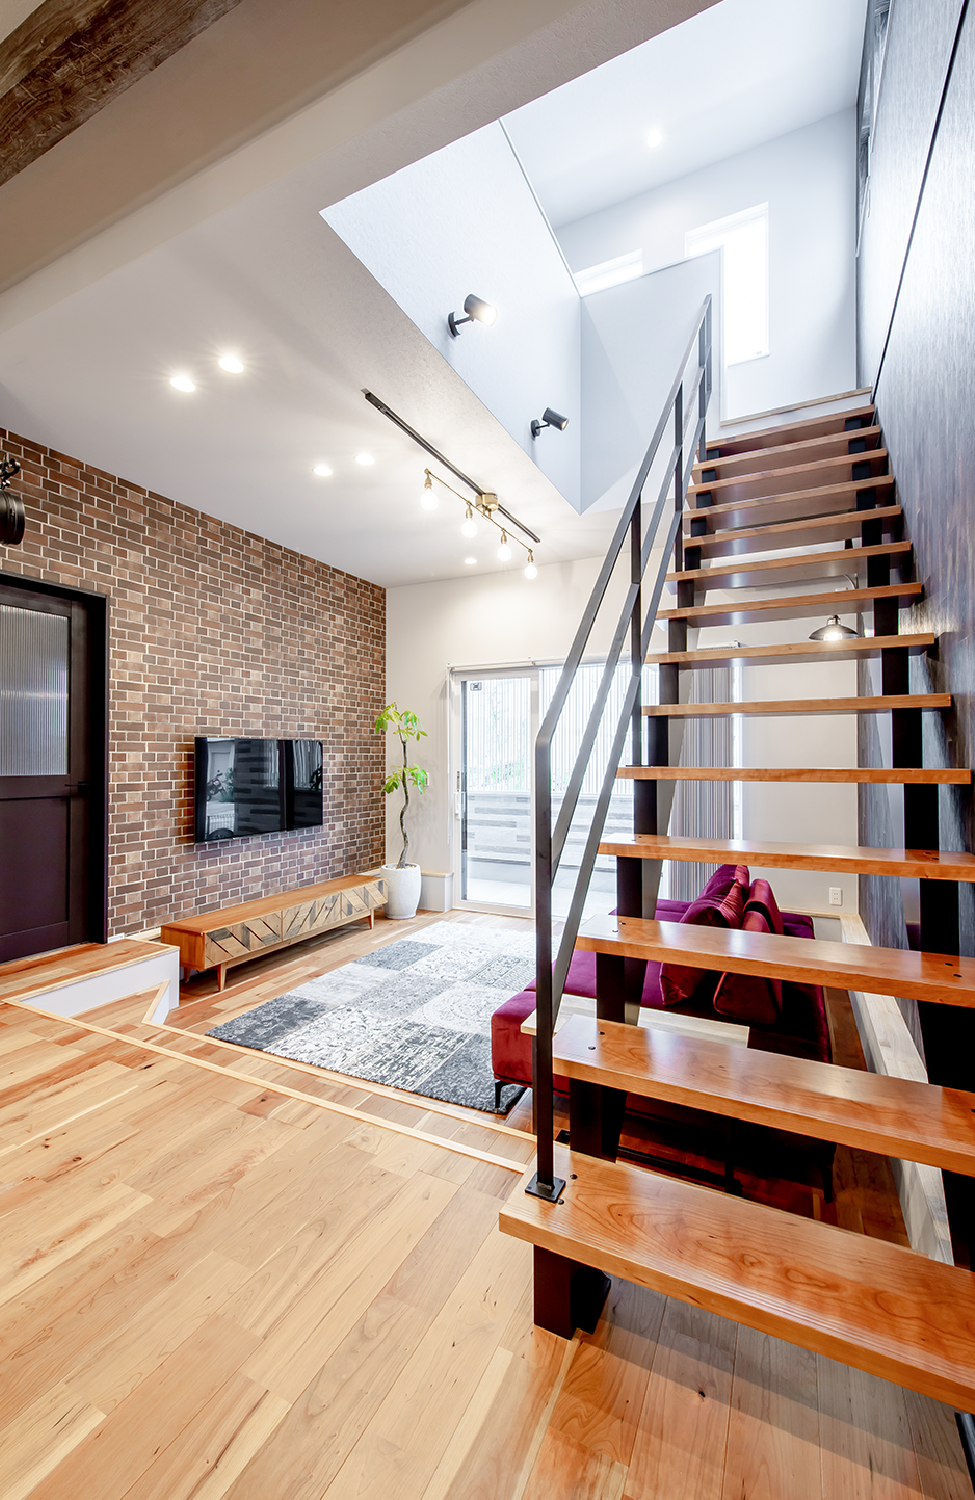 アイデザインホーム
注文住宅
広島県広島市佐伯区
TV側にはレンガ調、階段側にはヴィンテージ調、その他はホワイトと、3種類のウォールを使って構成されたリビングは、カフェライクな空間を創造しています